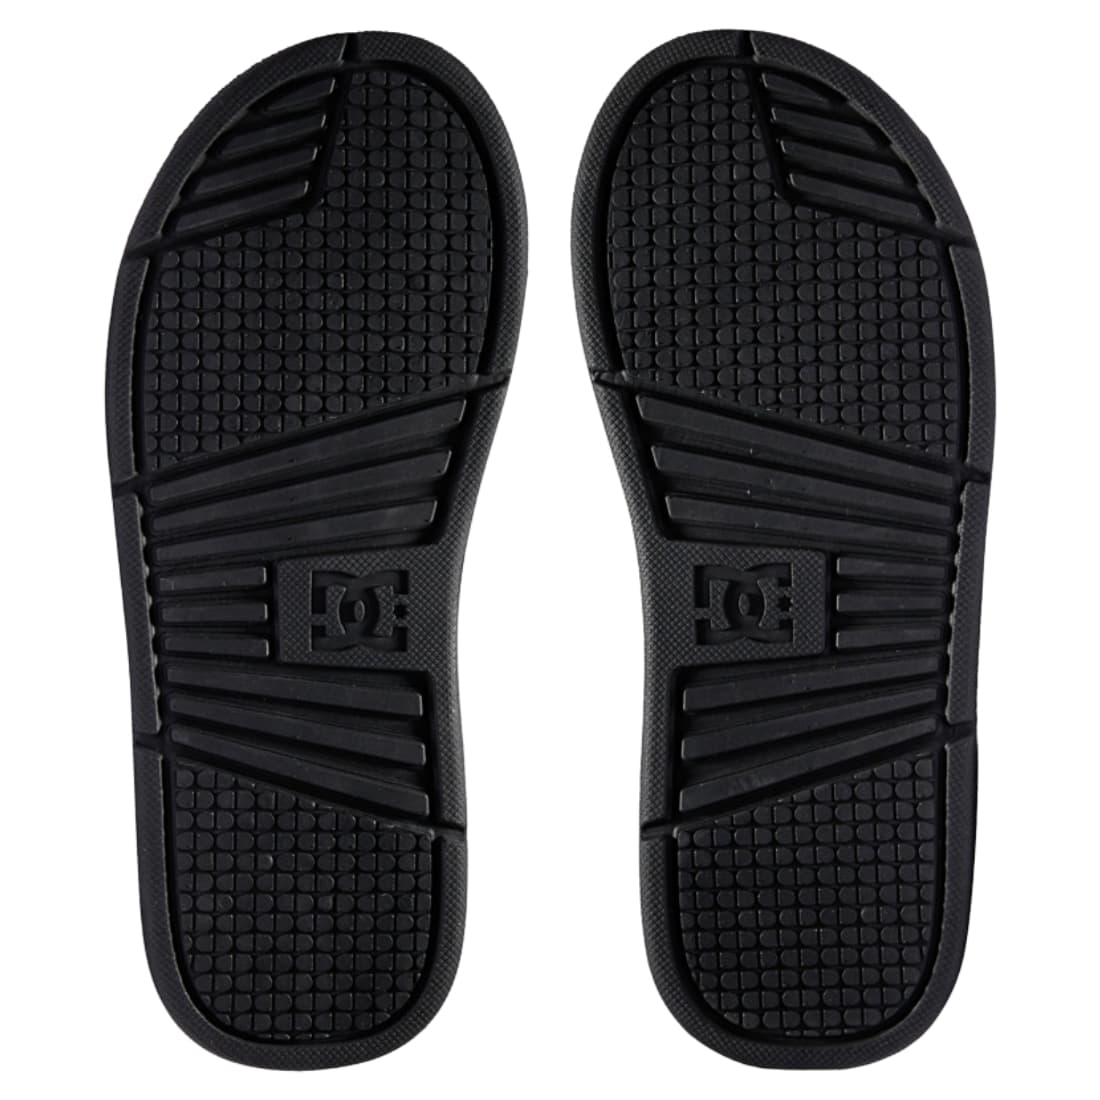 DC Bolsa Slide Sandals - Black/Camel - Mens Flip Flops by DC